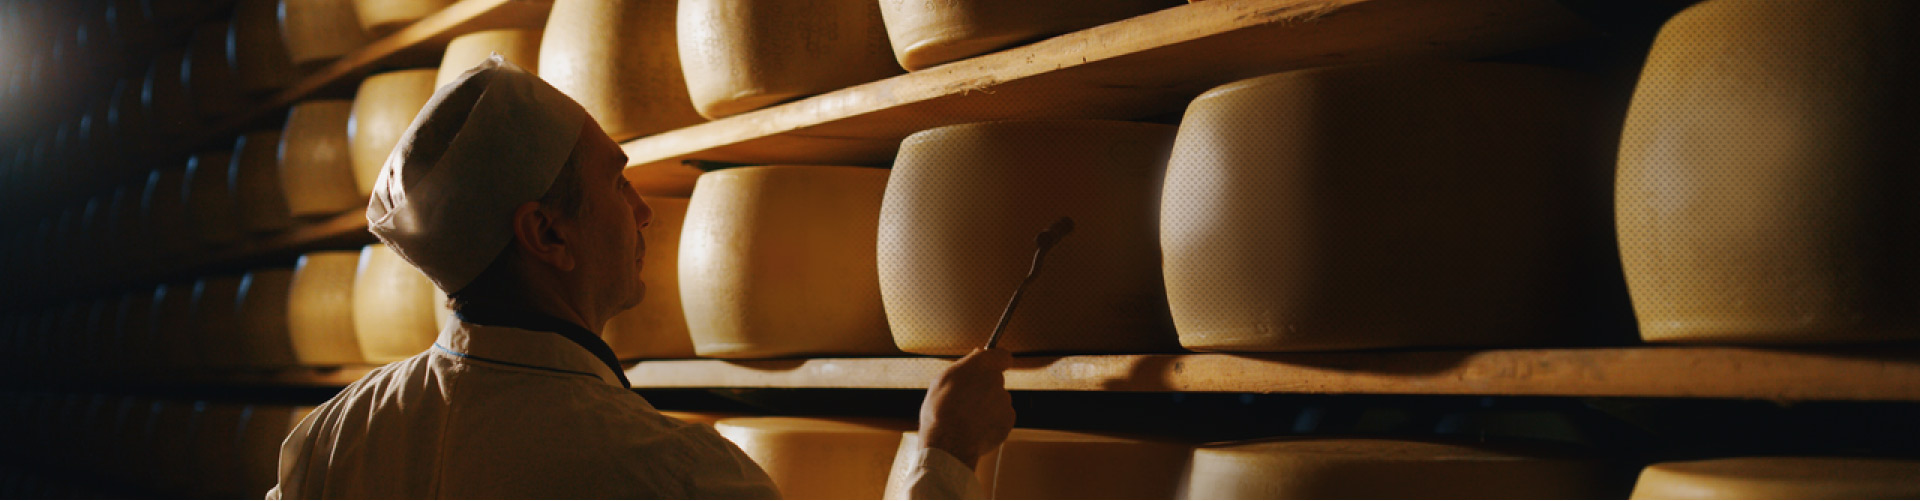 Hajdú sajt termékeink